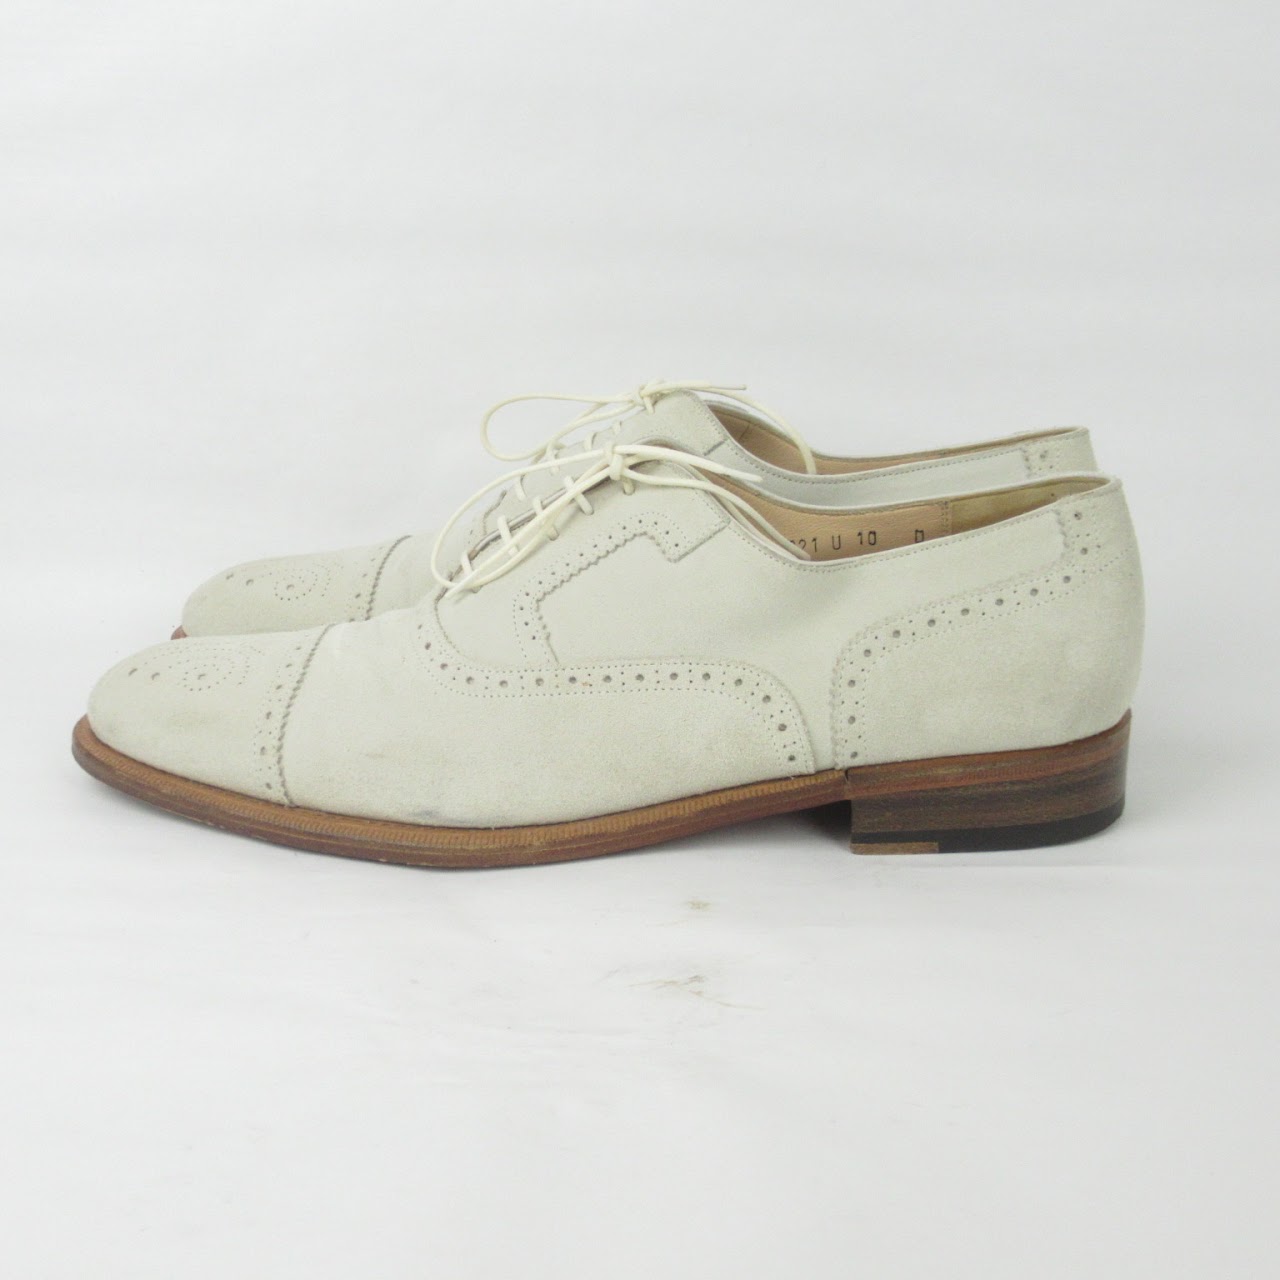 Salvatore Ferragamo Lavorazione Originale Cream Suede Oxford Shoes